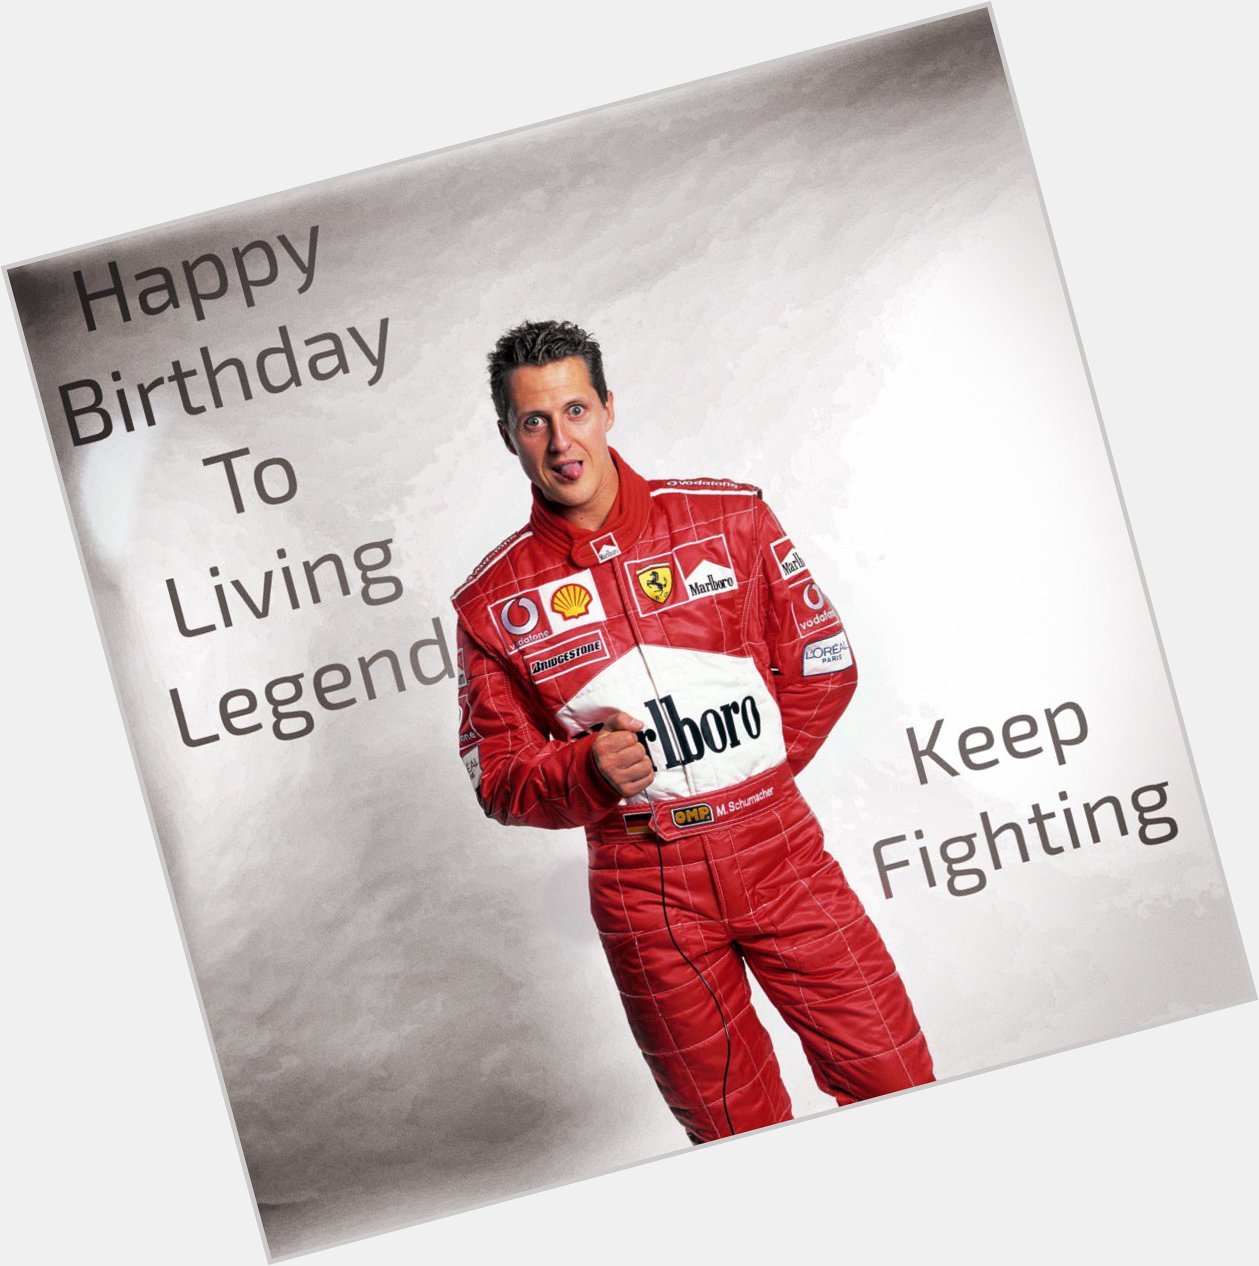   happy birthday sir Michael Schumacher  